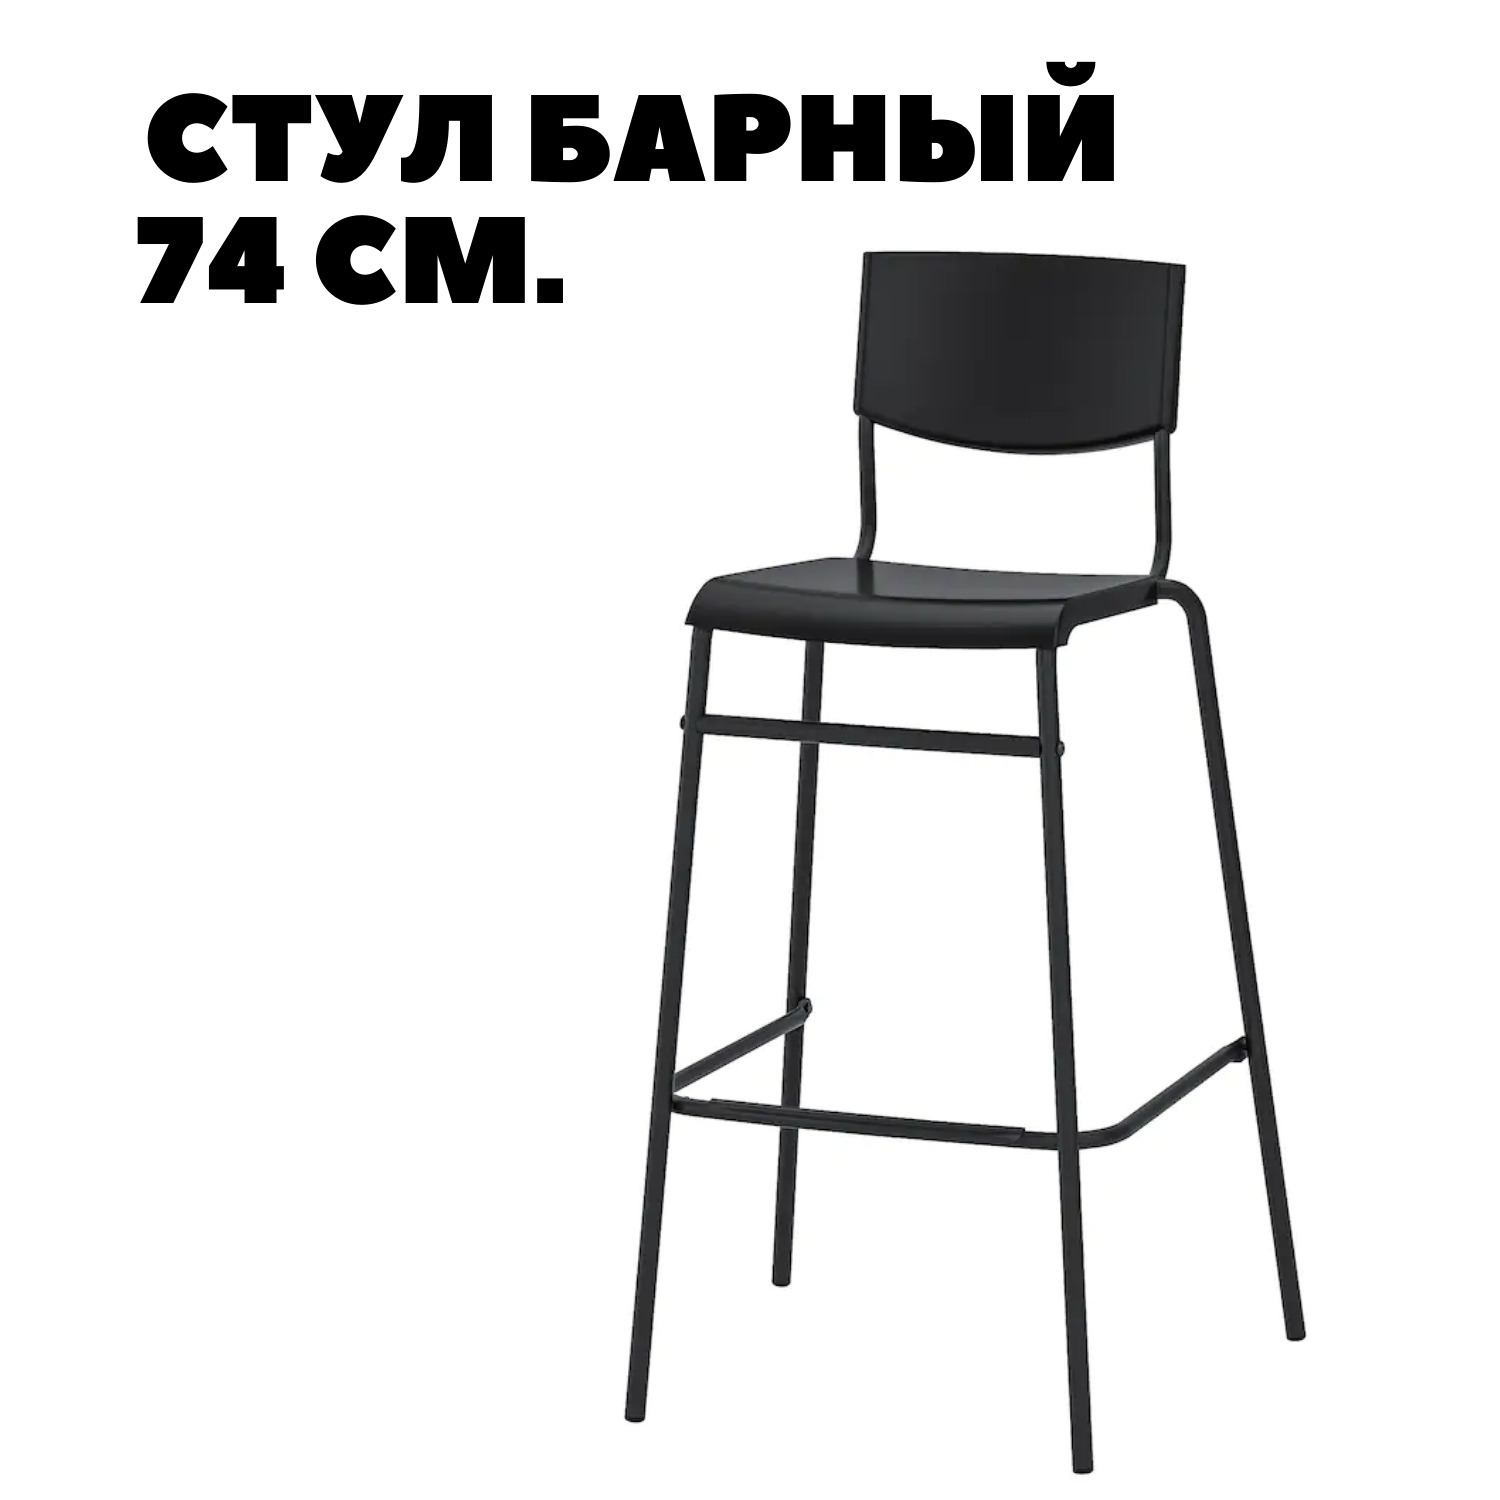 Барный стул икеа Стиг. Stig Стиг стул барный черный/серебристый 63 см. Полубарный стул высота сиденья 65 см. Стул барный икеа Стиг 74 см.